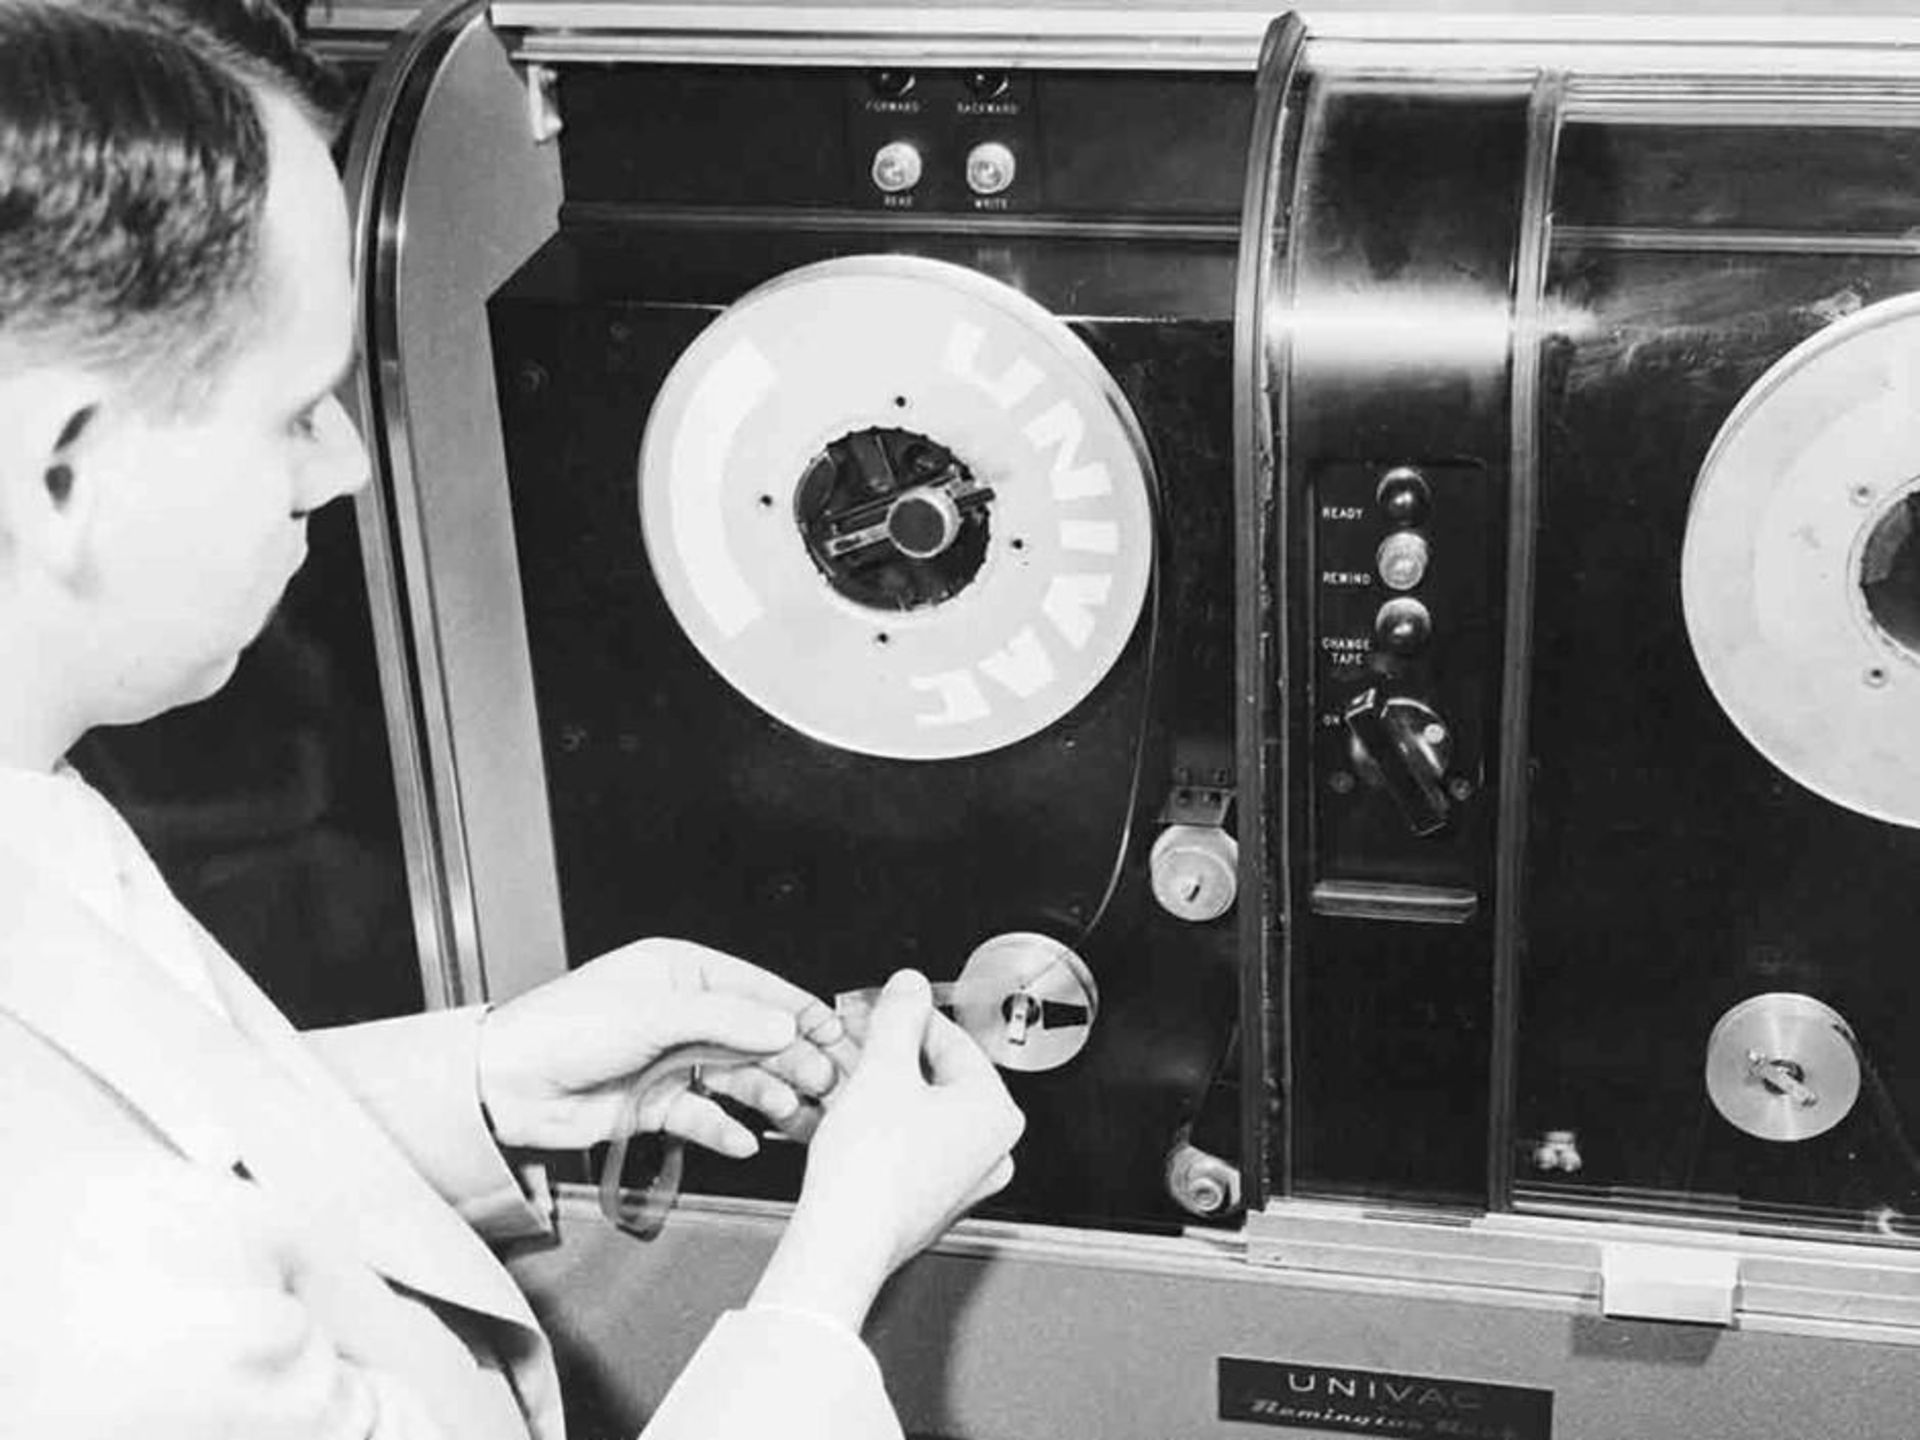 مرجع متخصصين ايران ۱۹۵۱: براي اولين بار از نوار مغناطيسي براي ثبت داده‌ها روي كامپيوتر استفاده شد